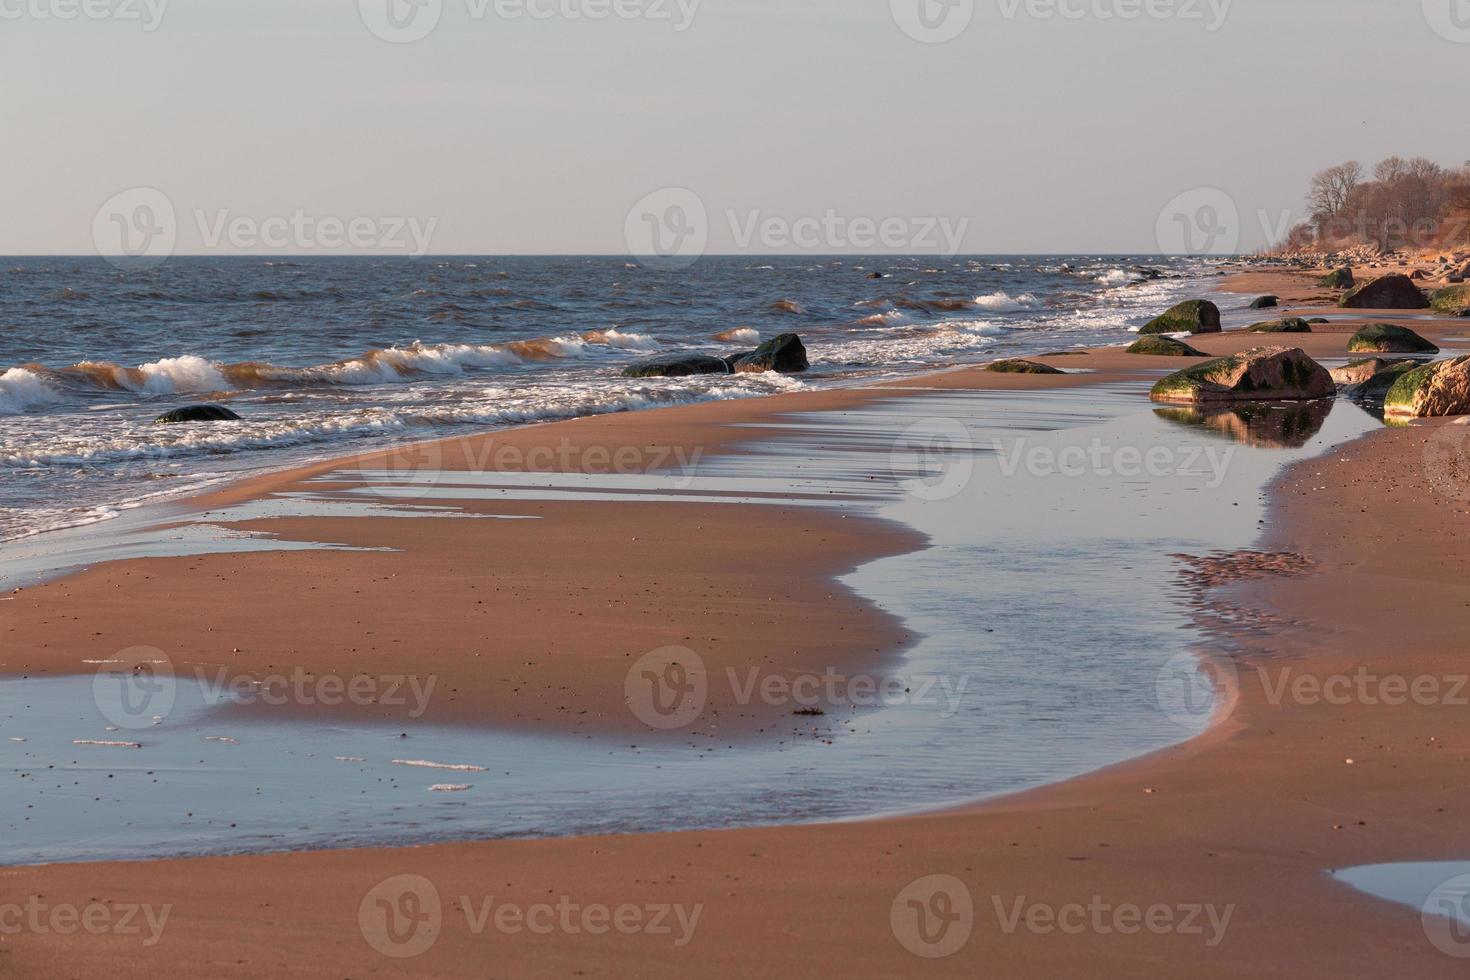 pedras na costa do mar báltico ao pôr do sol foto